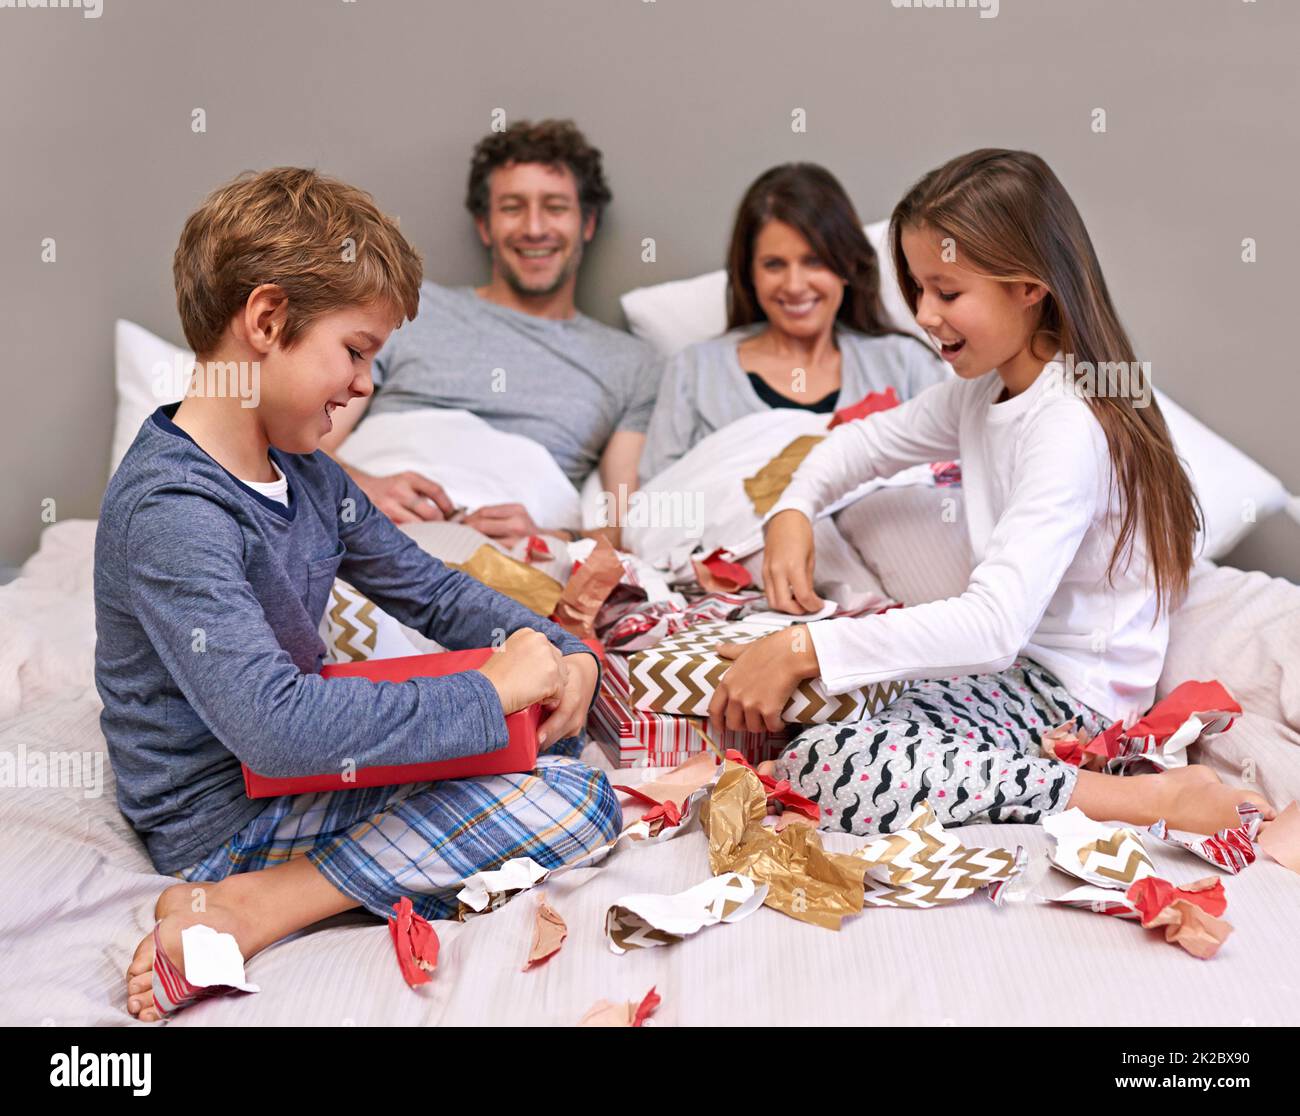 Zeit mit der Familie. Aufnahme einer glücklichen vierköpfigen Familie im Schlafzimmer. Stockfoto